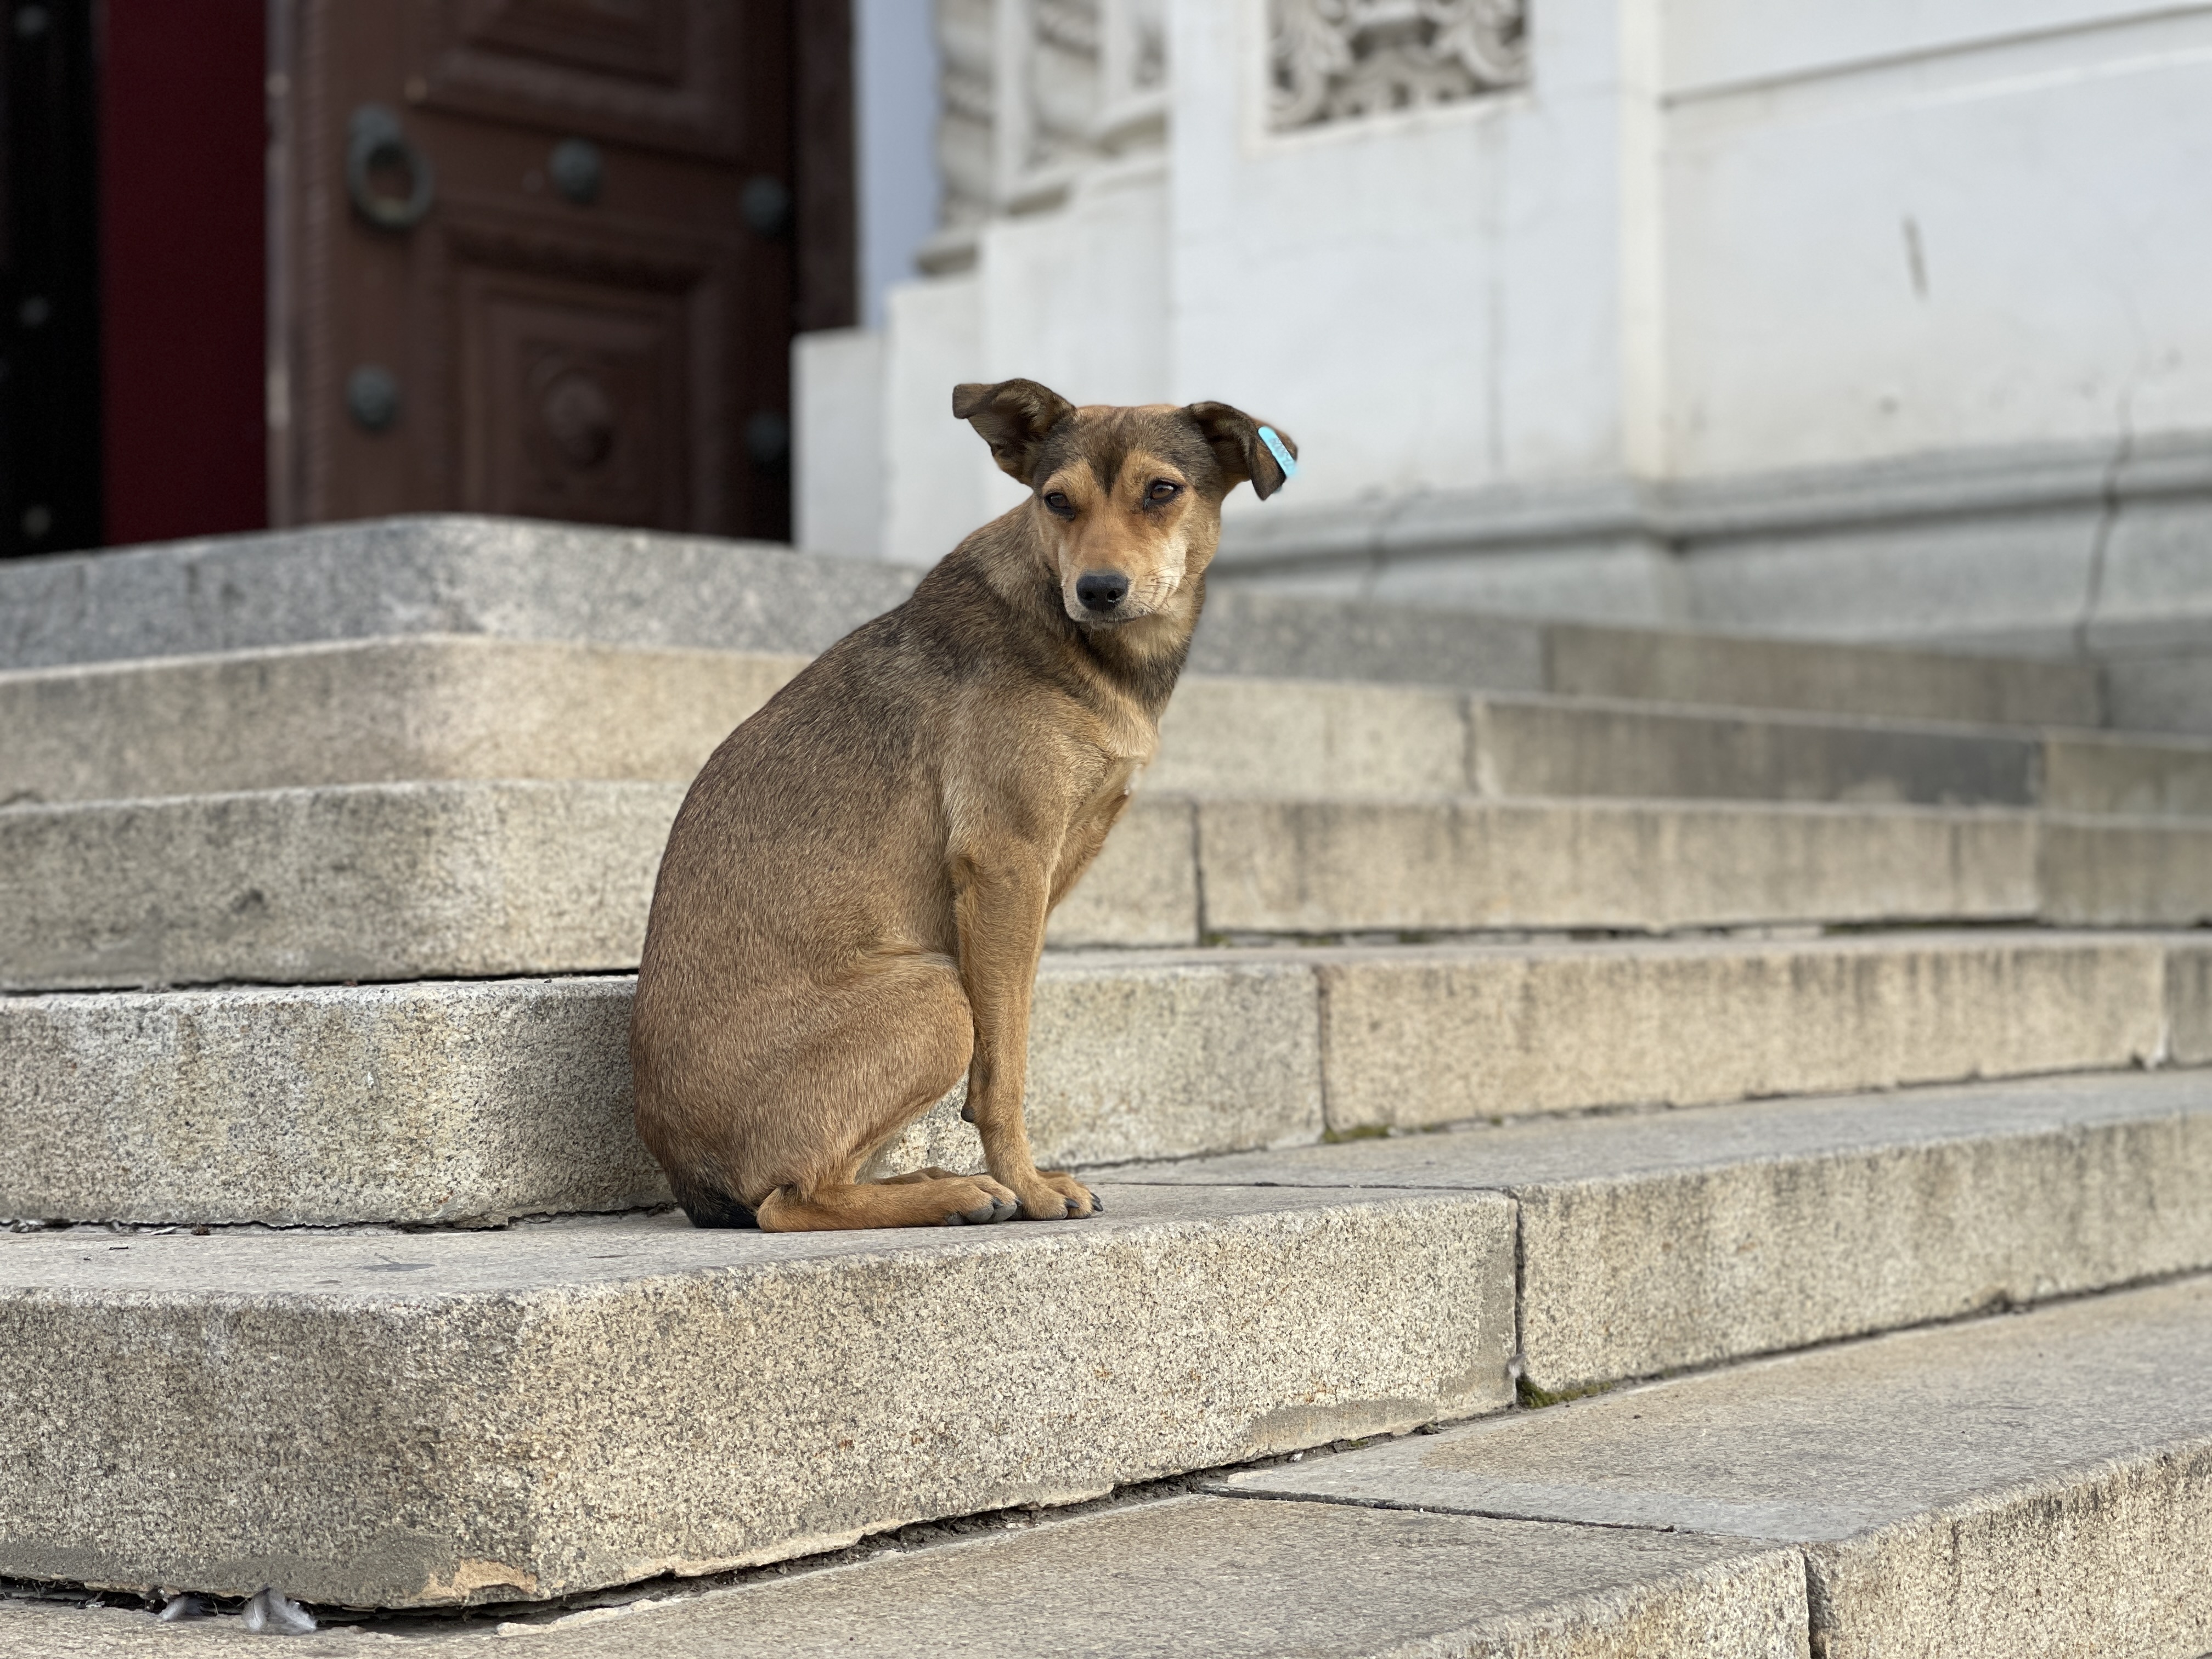 Ztracený pes dokáže majitele vykolejit. Jak si počínat, abyste zvýšili šance na návrat?